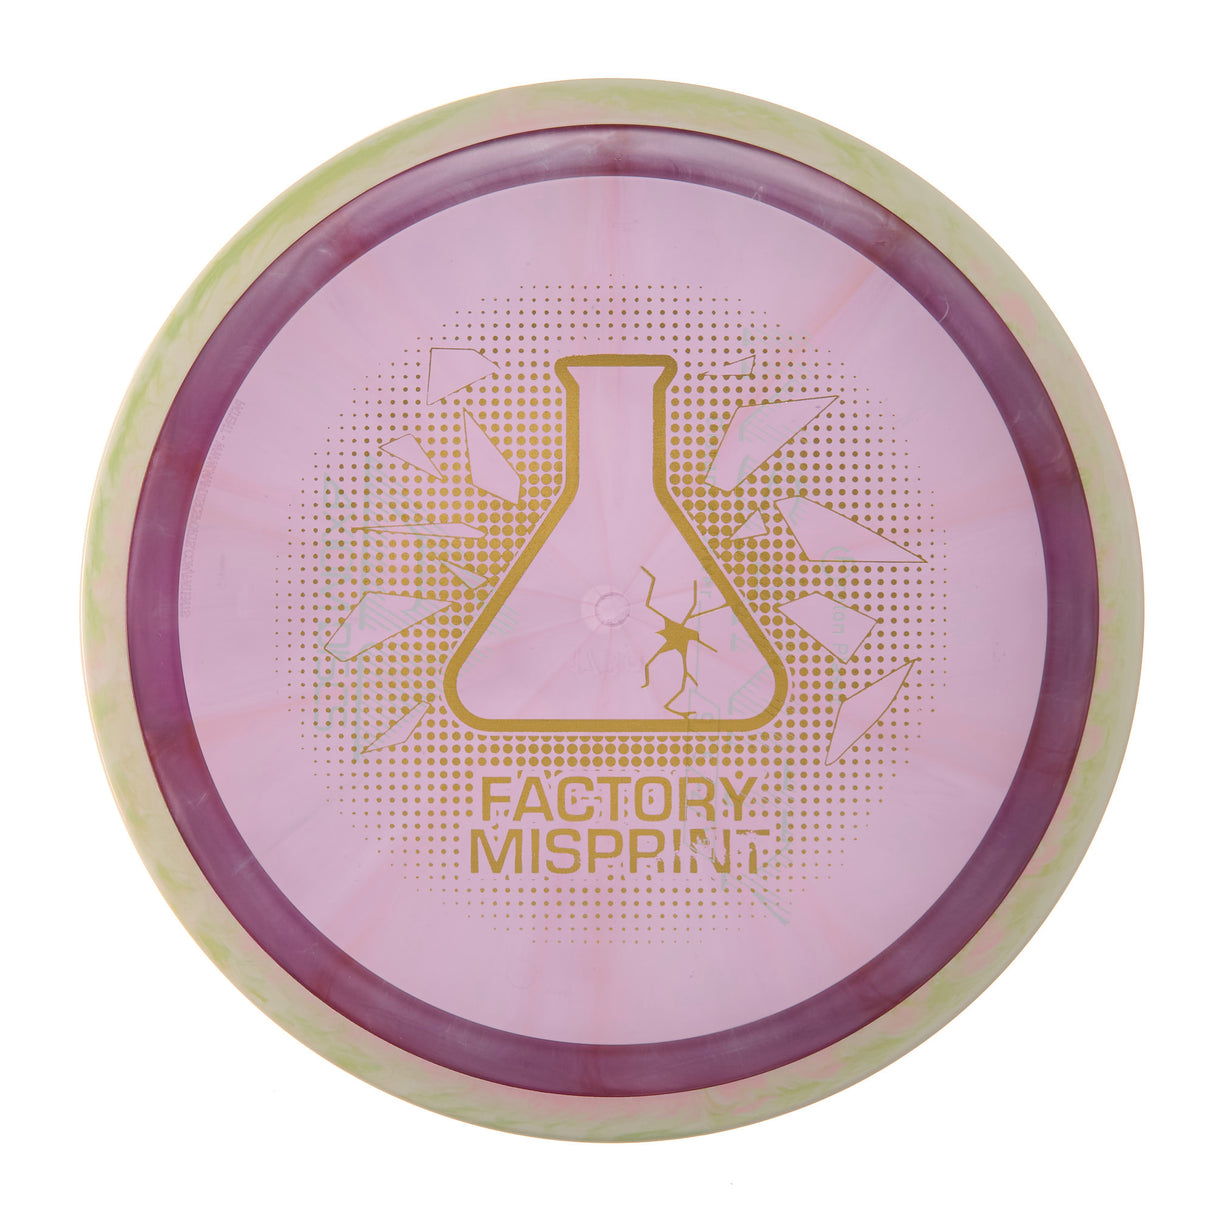 Axiom Insanity - Factory Misprint Proton 173g | Style 0016